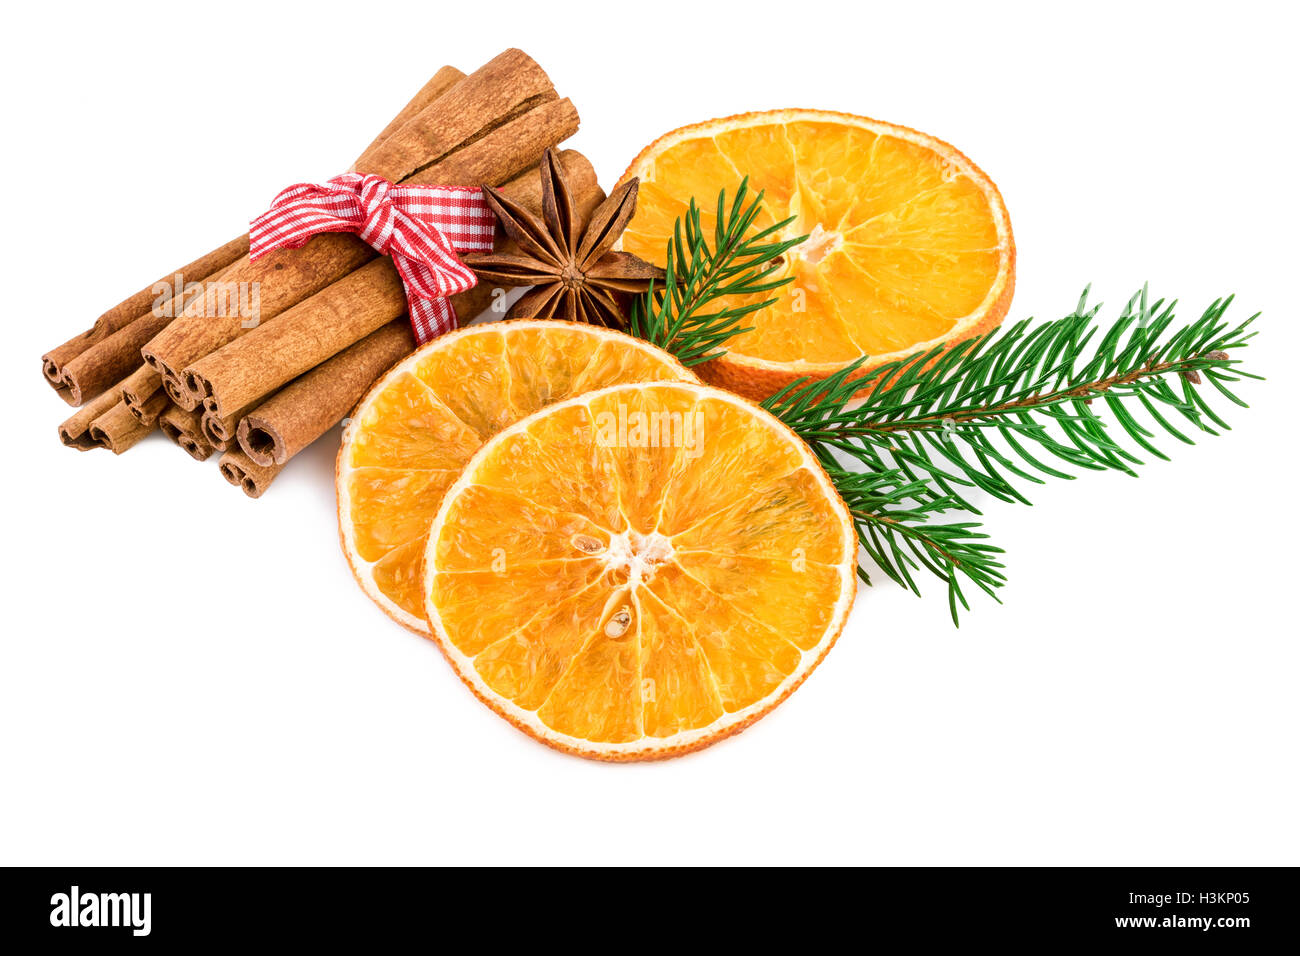 Natale spezie con bastoncini di cannella ed essiccato fettine di arancia su bianco Foto Stock